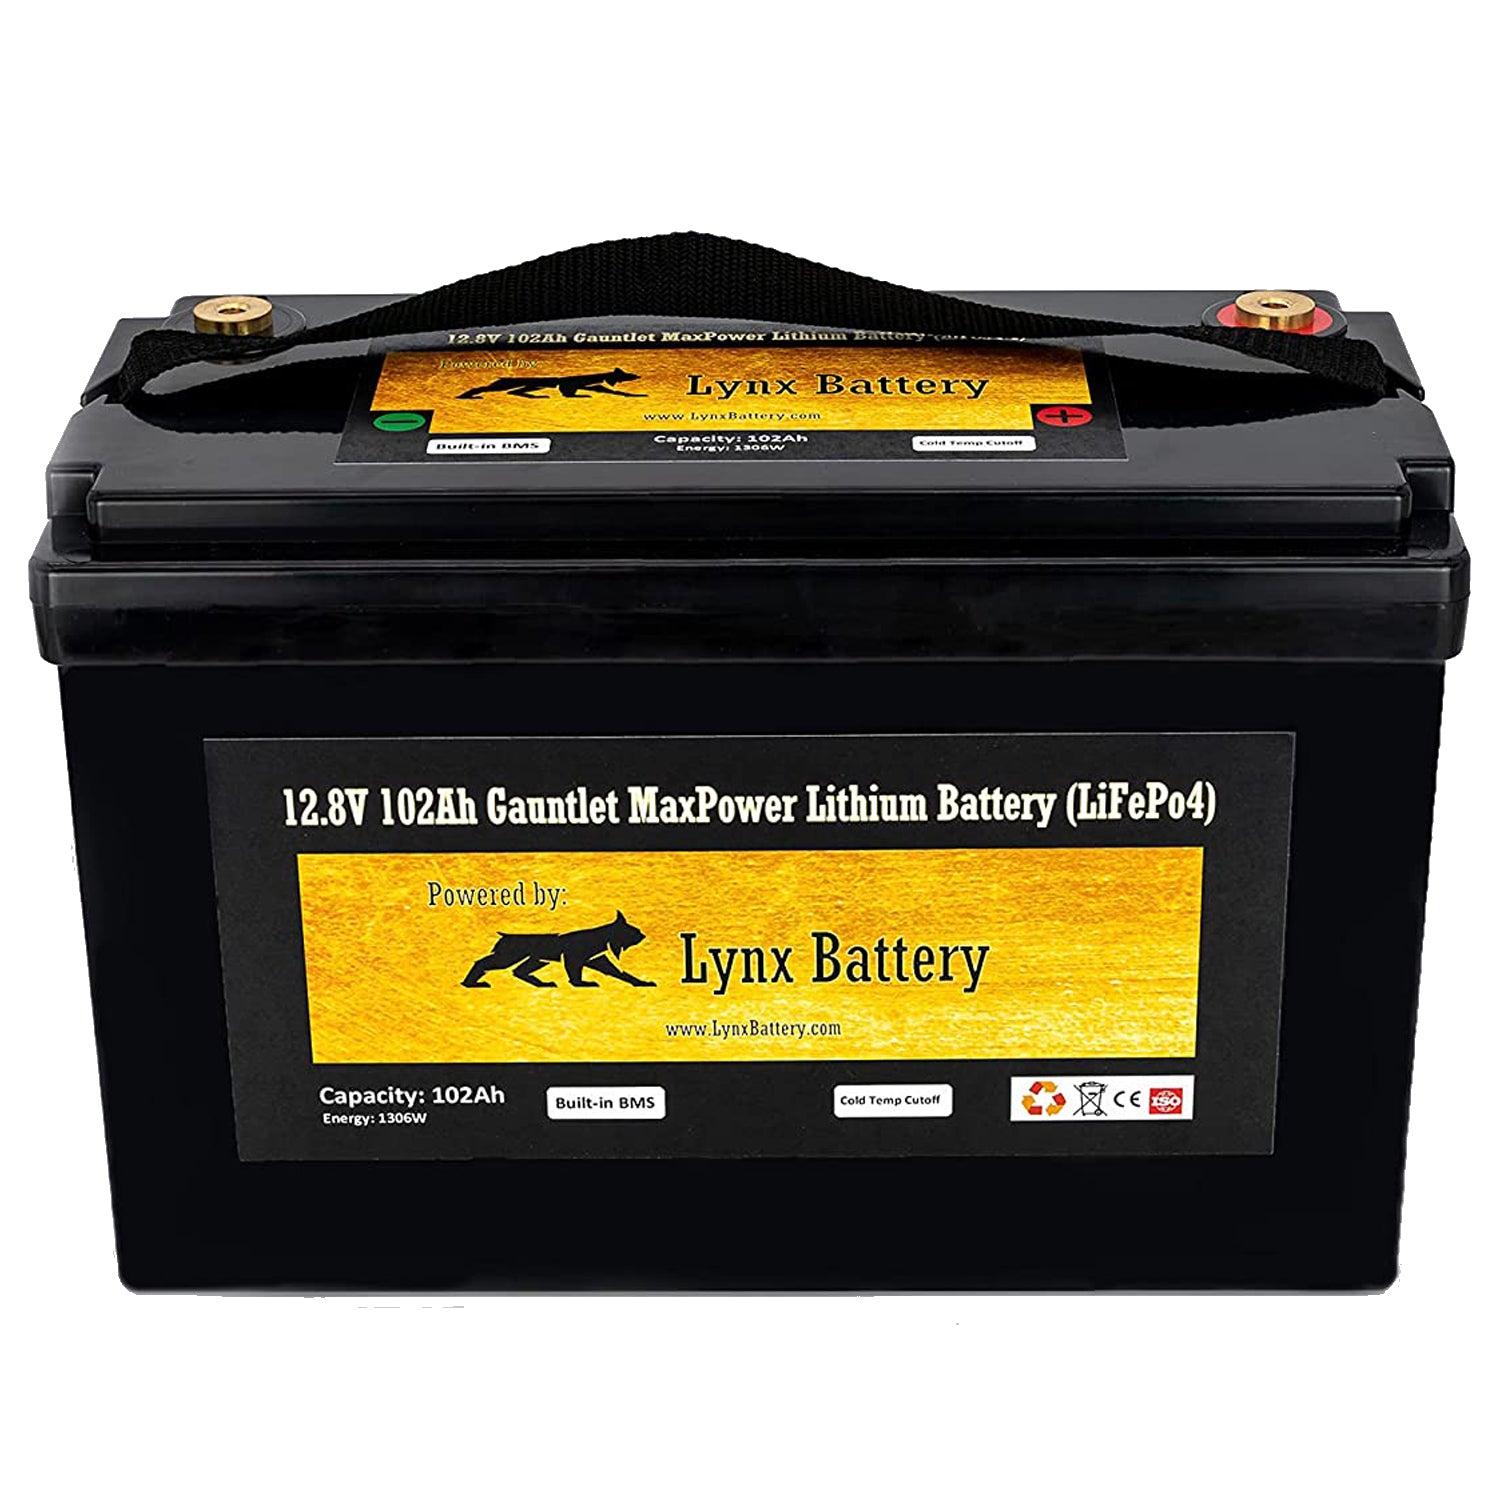 Lynx Lithium Battery 12V 100Ah, (LiFePO4) NextGen Cylindrical